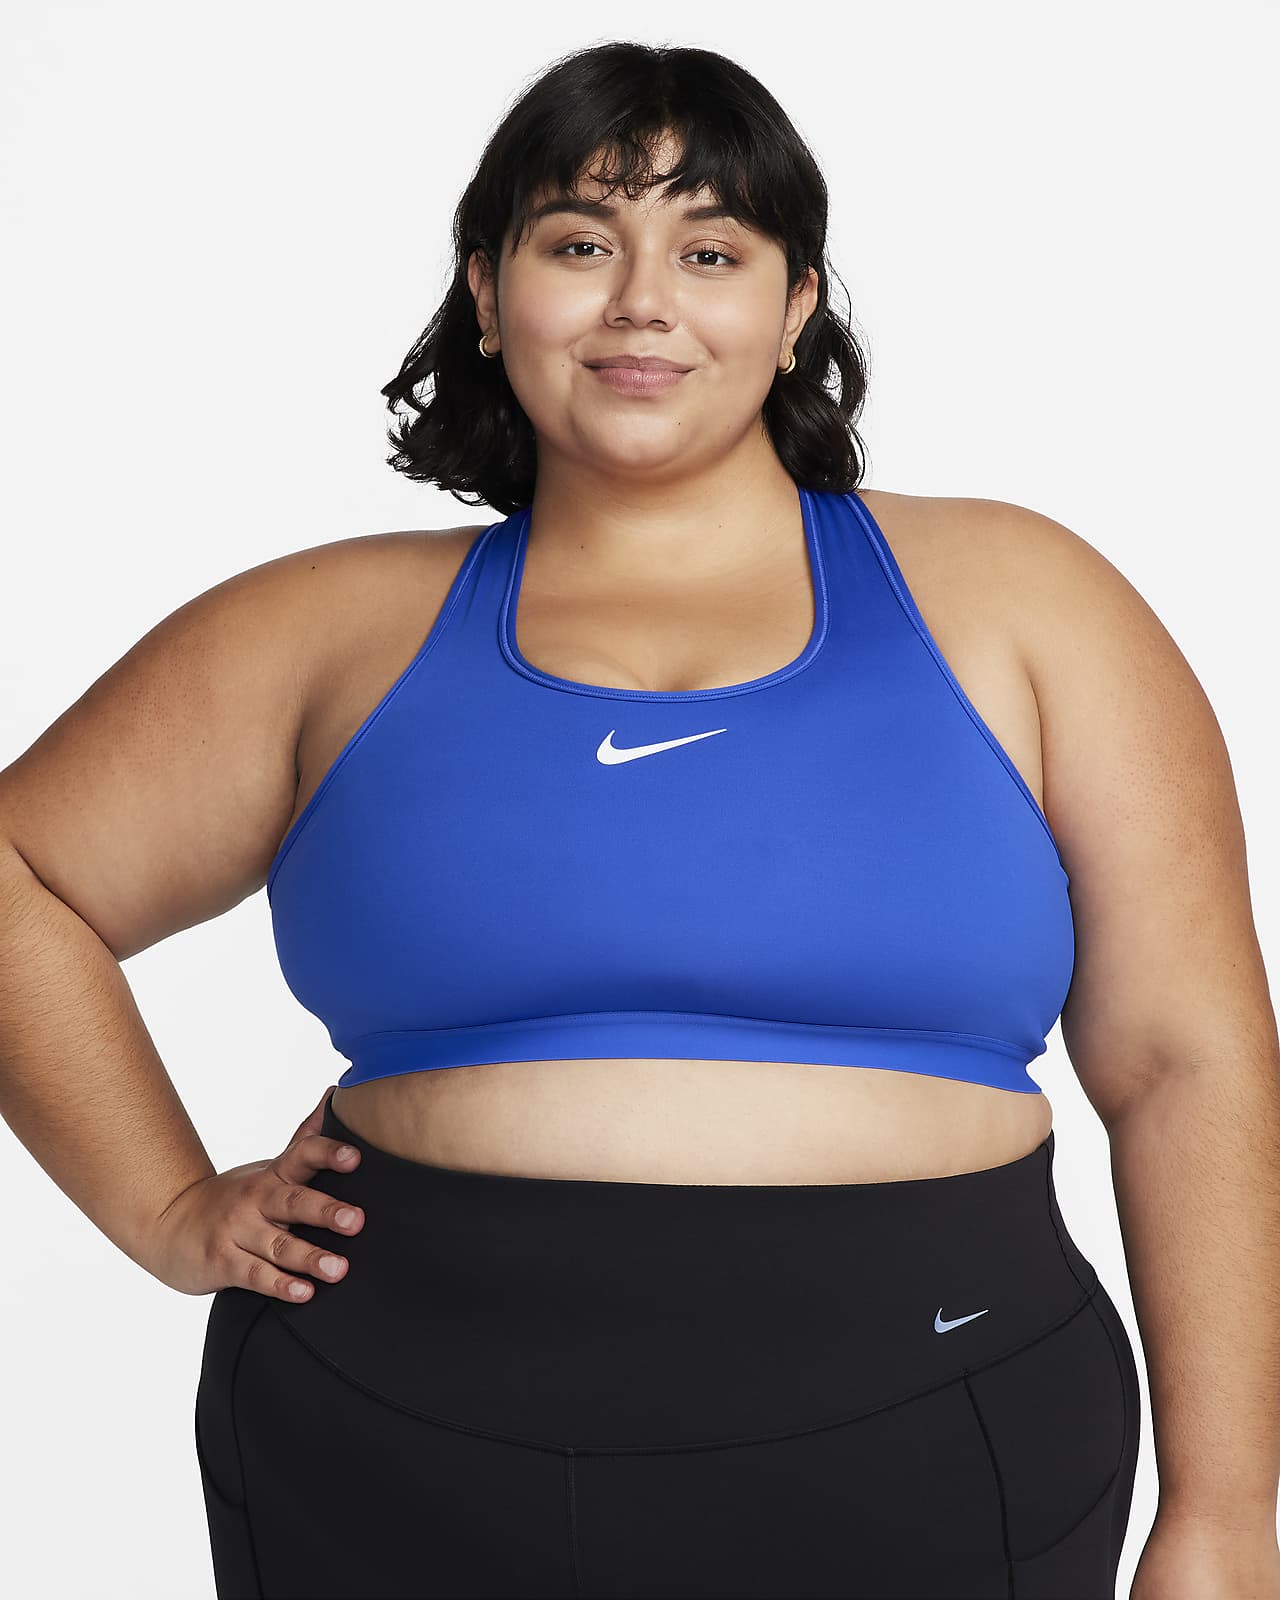 Women's Sports Bras. Nike CA